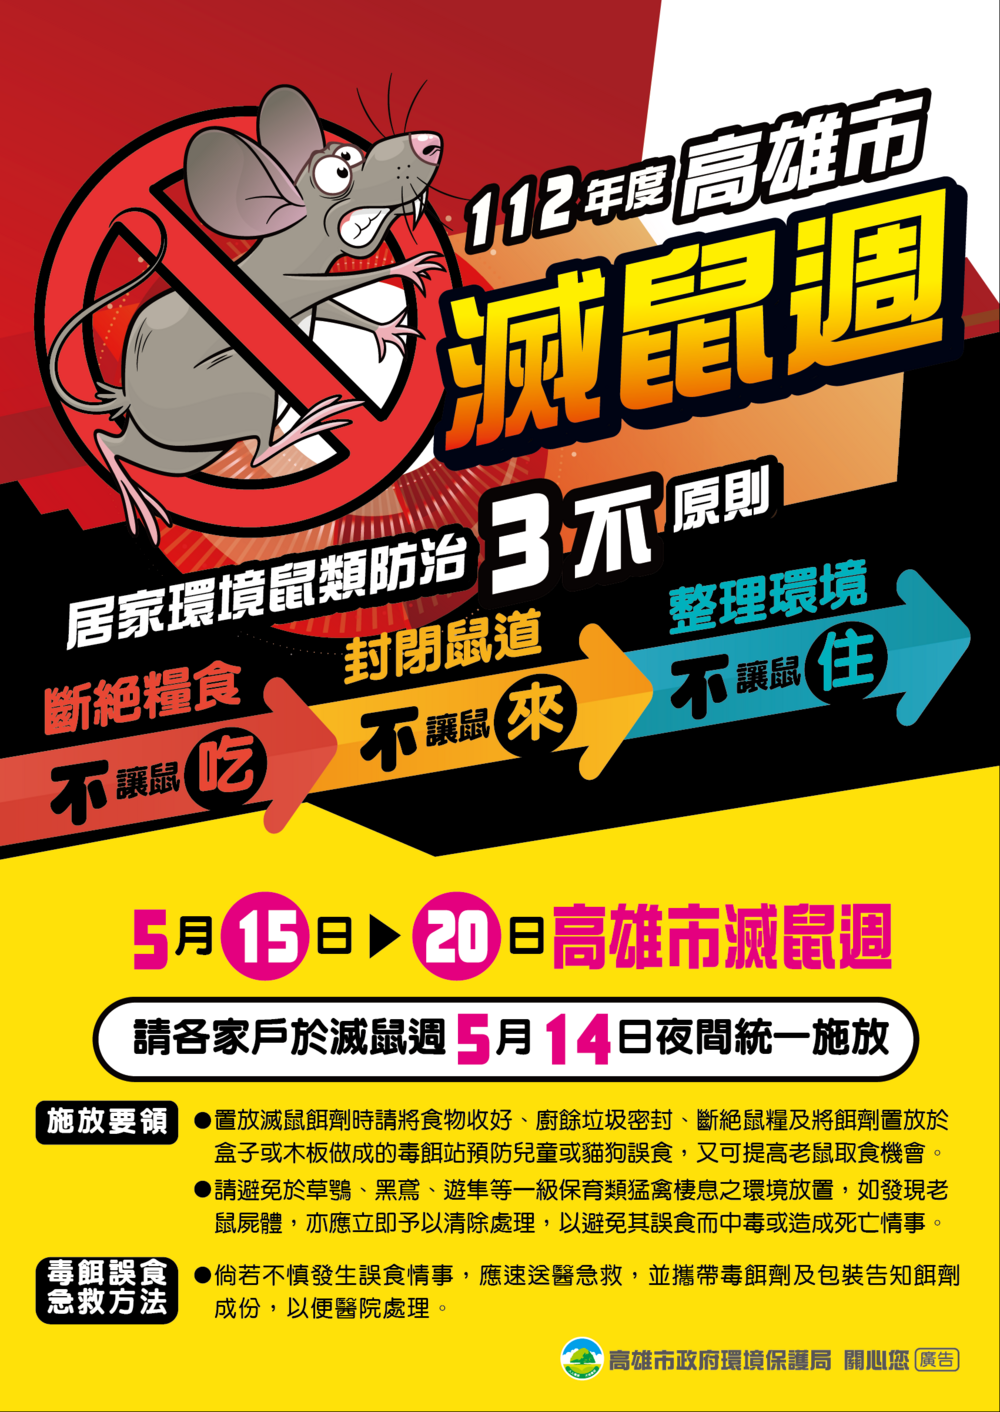 112年滅鼠週 居家環境滅鼠全民逗陣來 - 台北郵報 | The Taipei Post